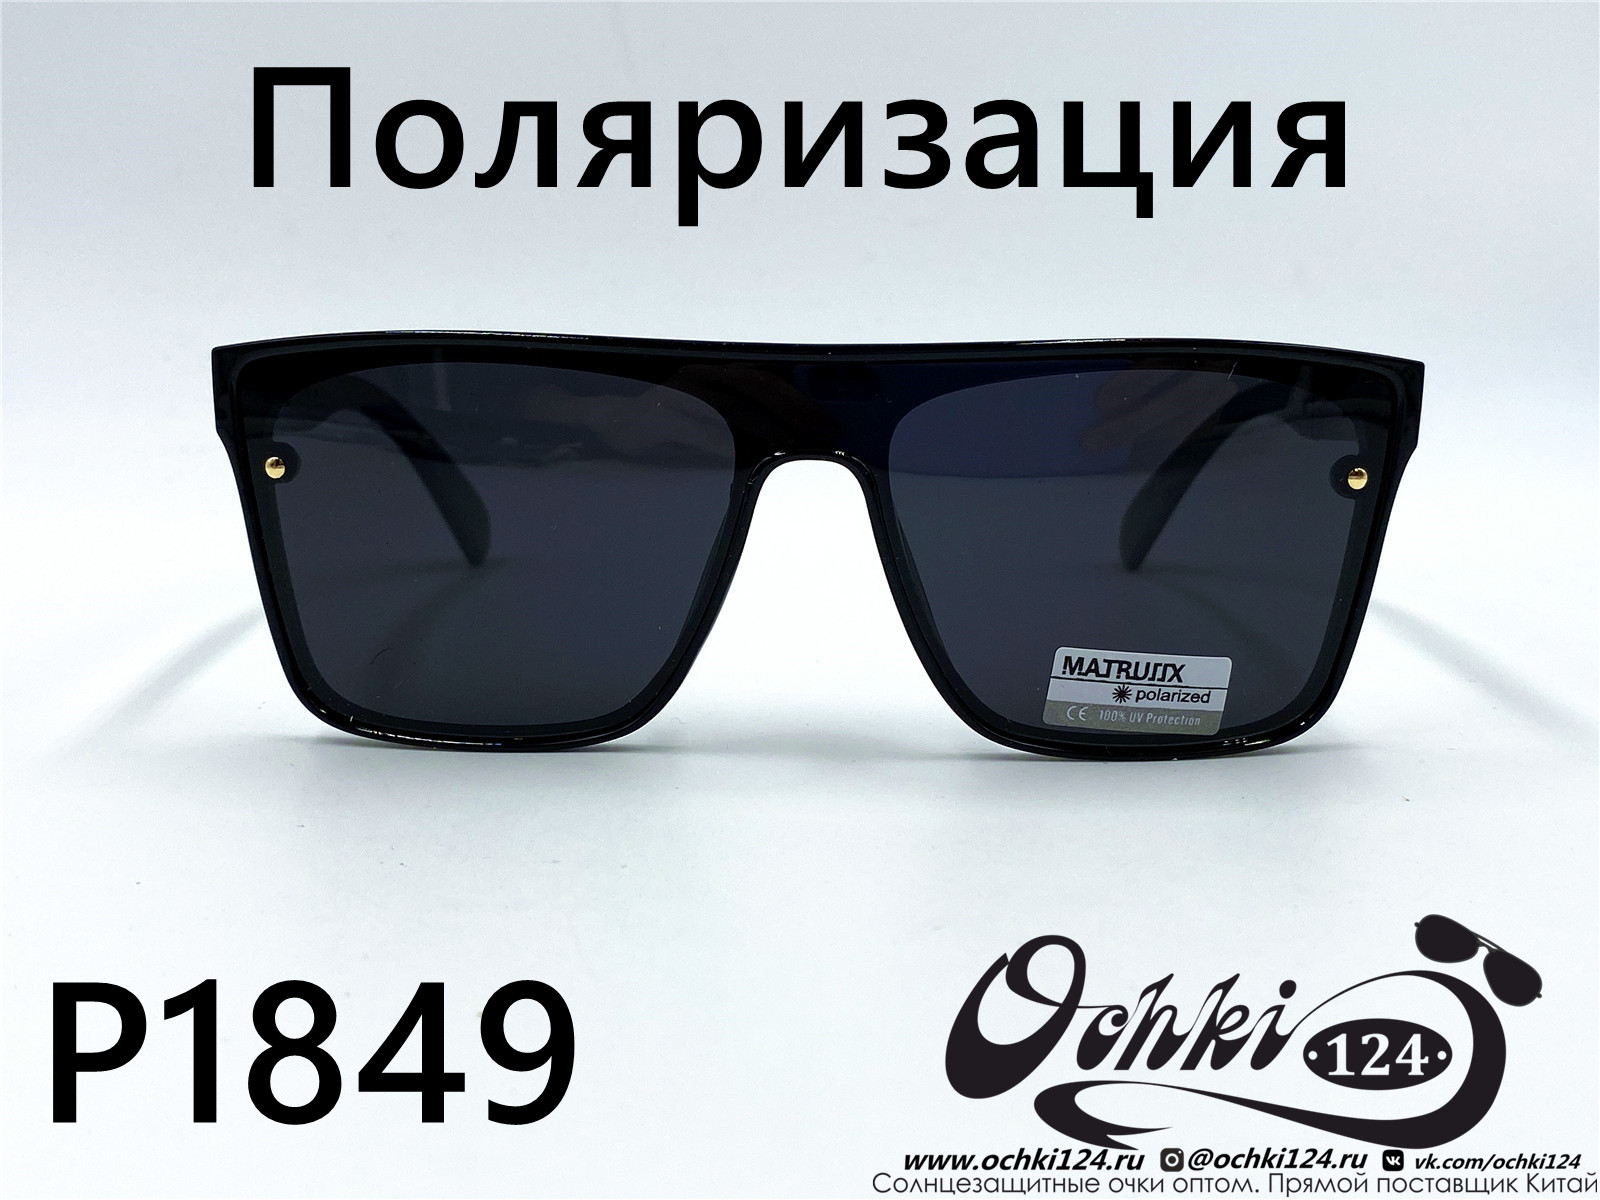  Солнцезащитные очки картинка 2022 Мужские Поляризованные Квадратные Matlrxs P1849-1 